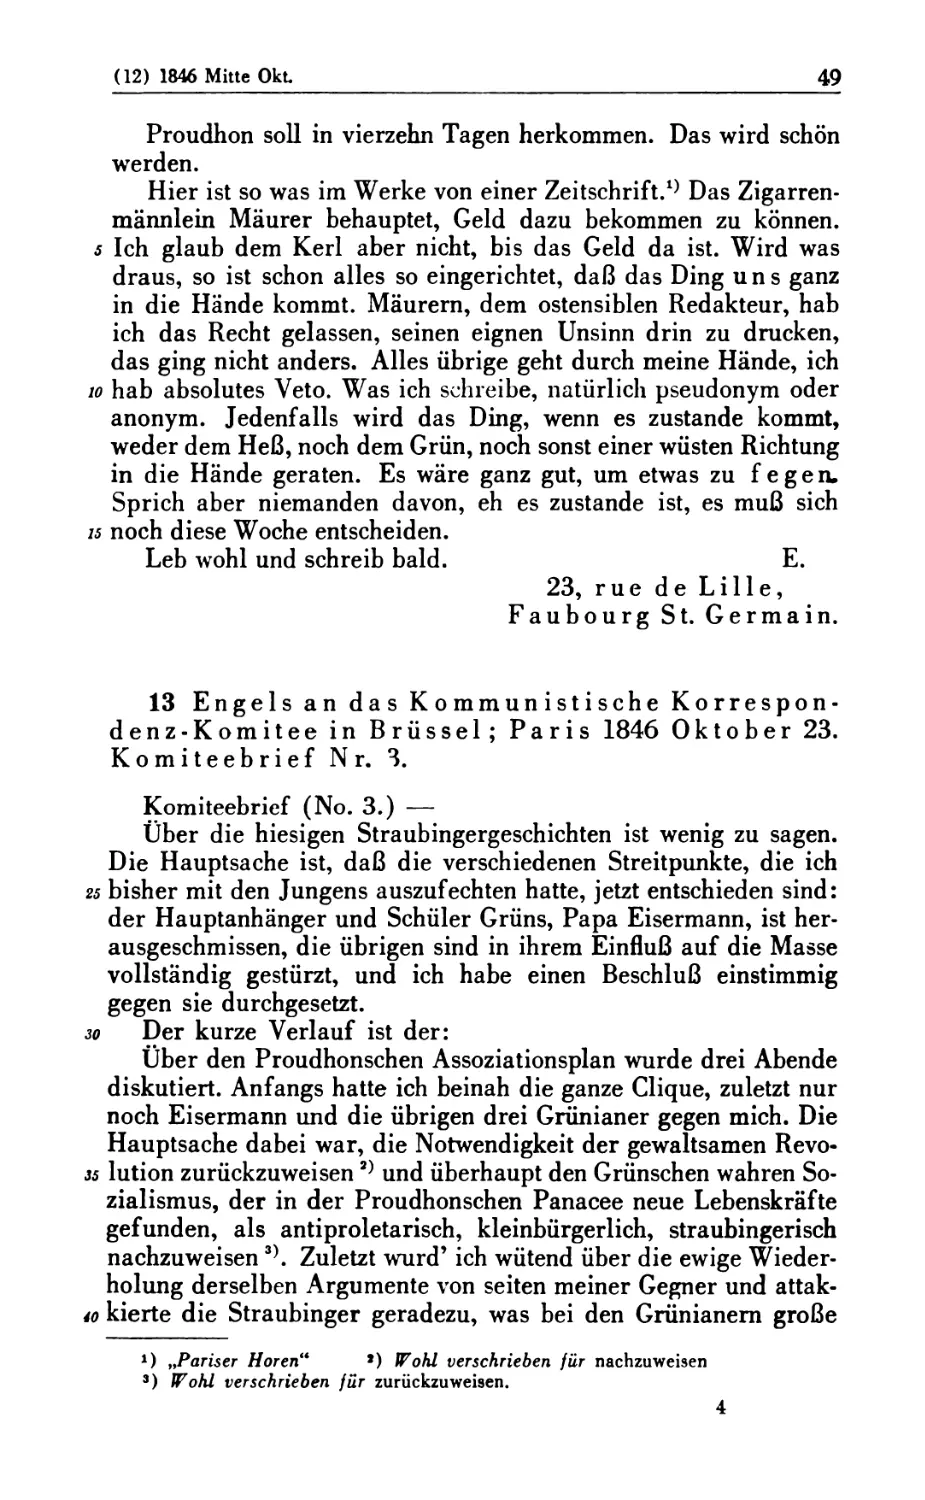 13. Engels an das Kommunistische Korrespondenz-Komitee in Brüssel; Paris 1846 Oktober 23. Komiteebrief Nr. 3